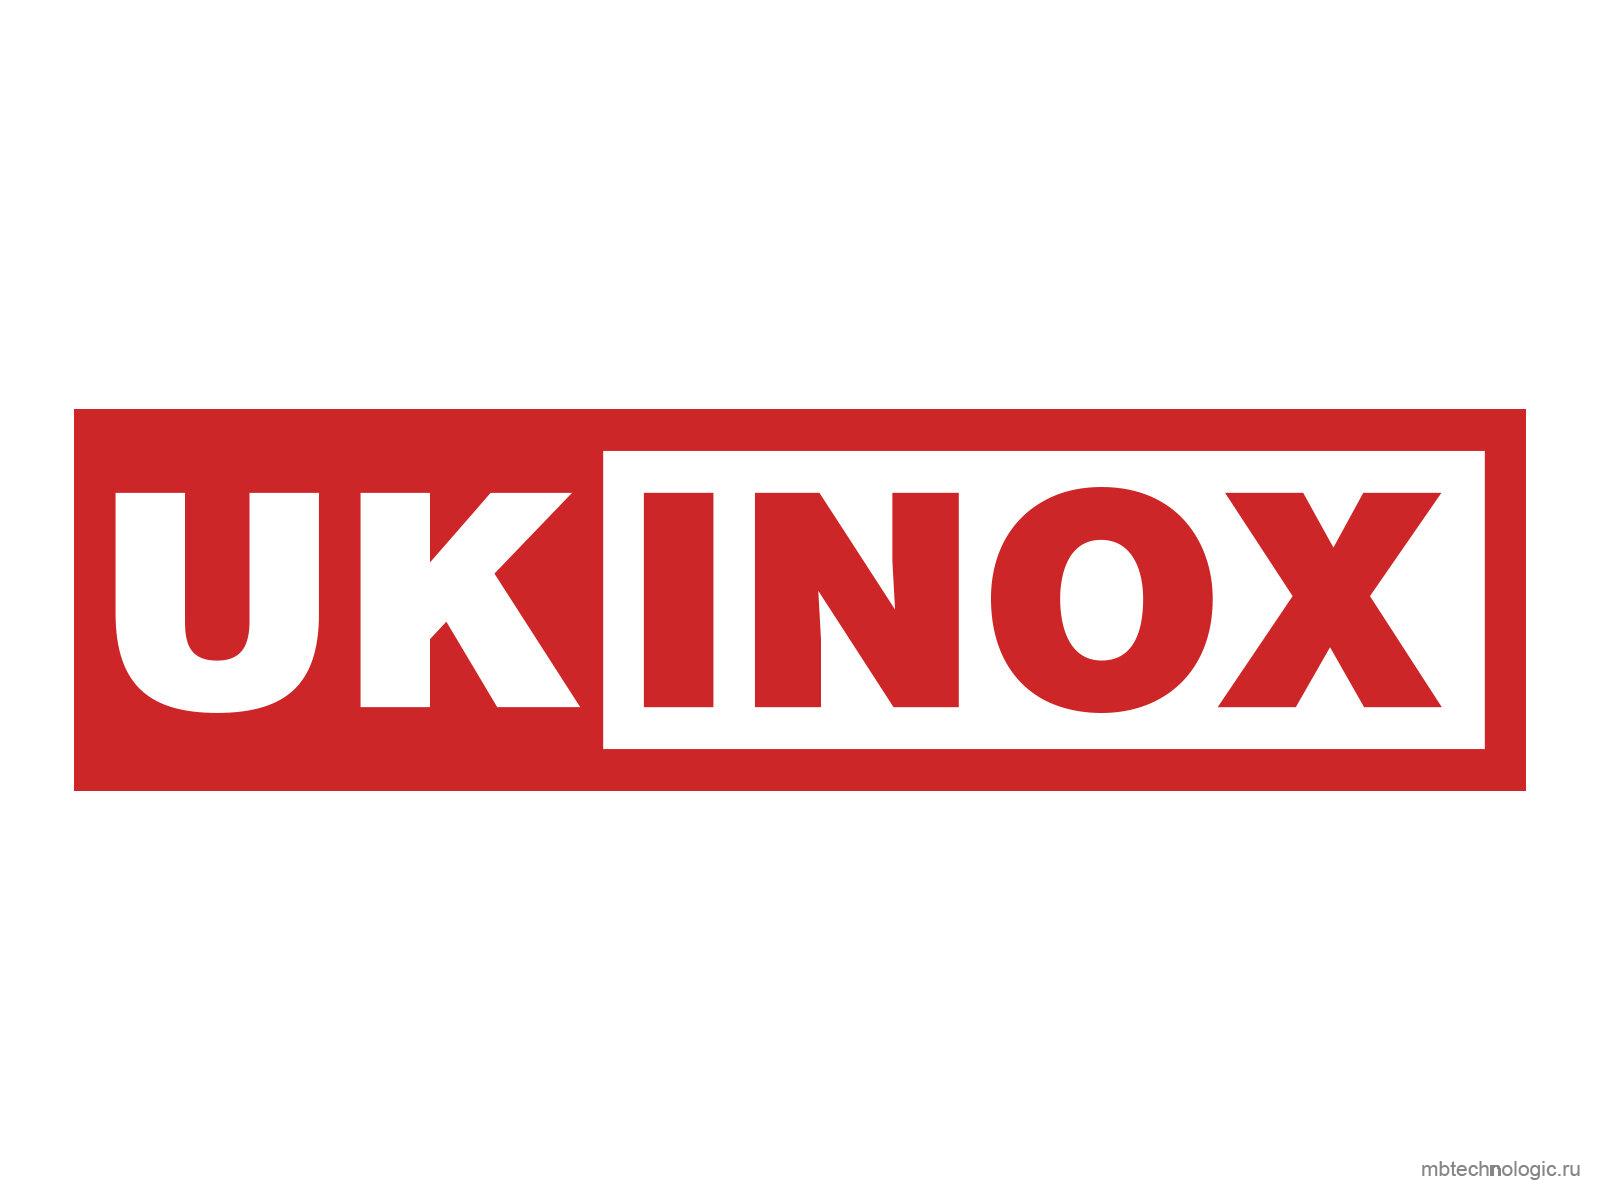 UKINOX